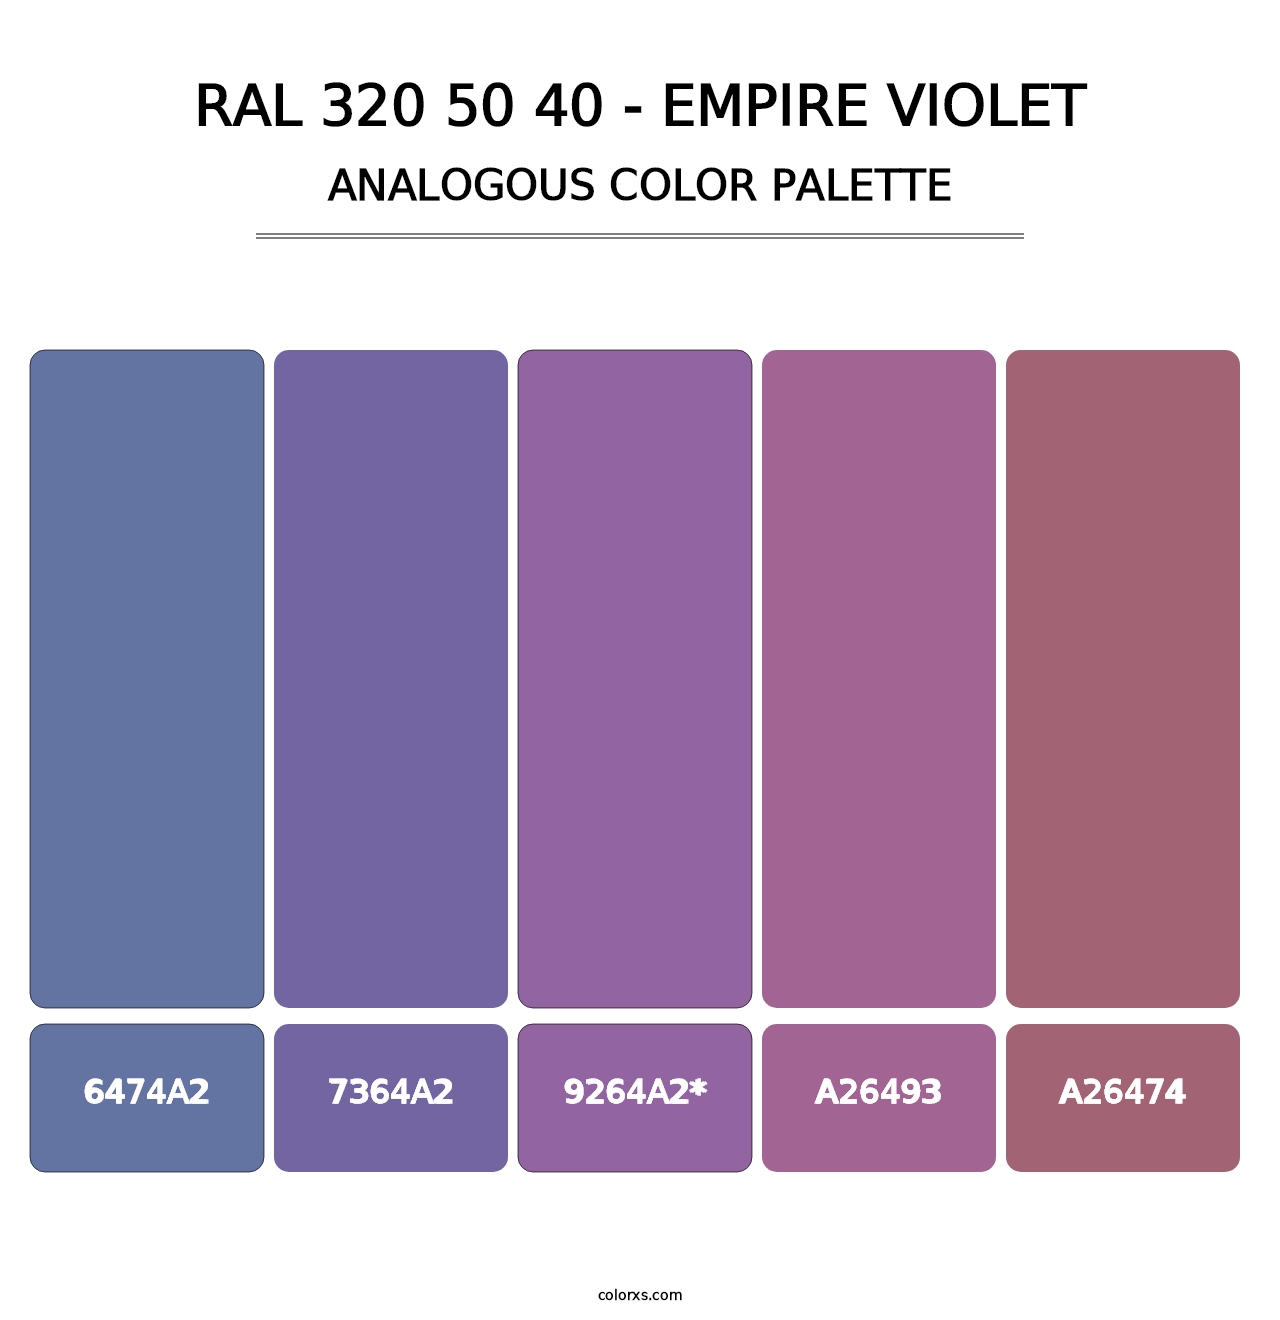 RAL 320 50 40 - Empire Violet - Analogous Color Palette